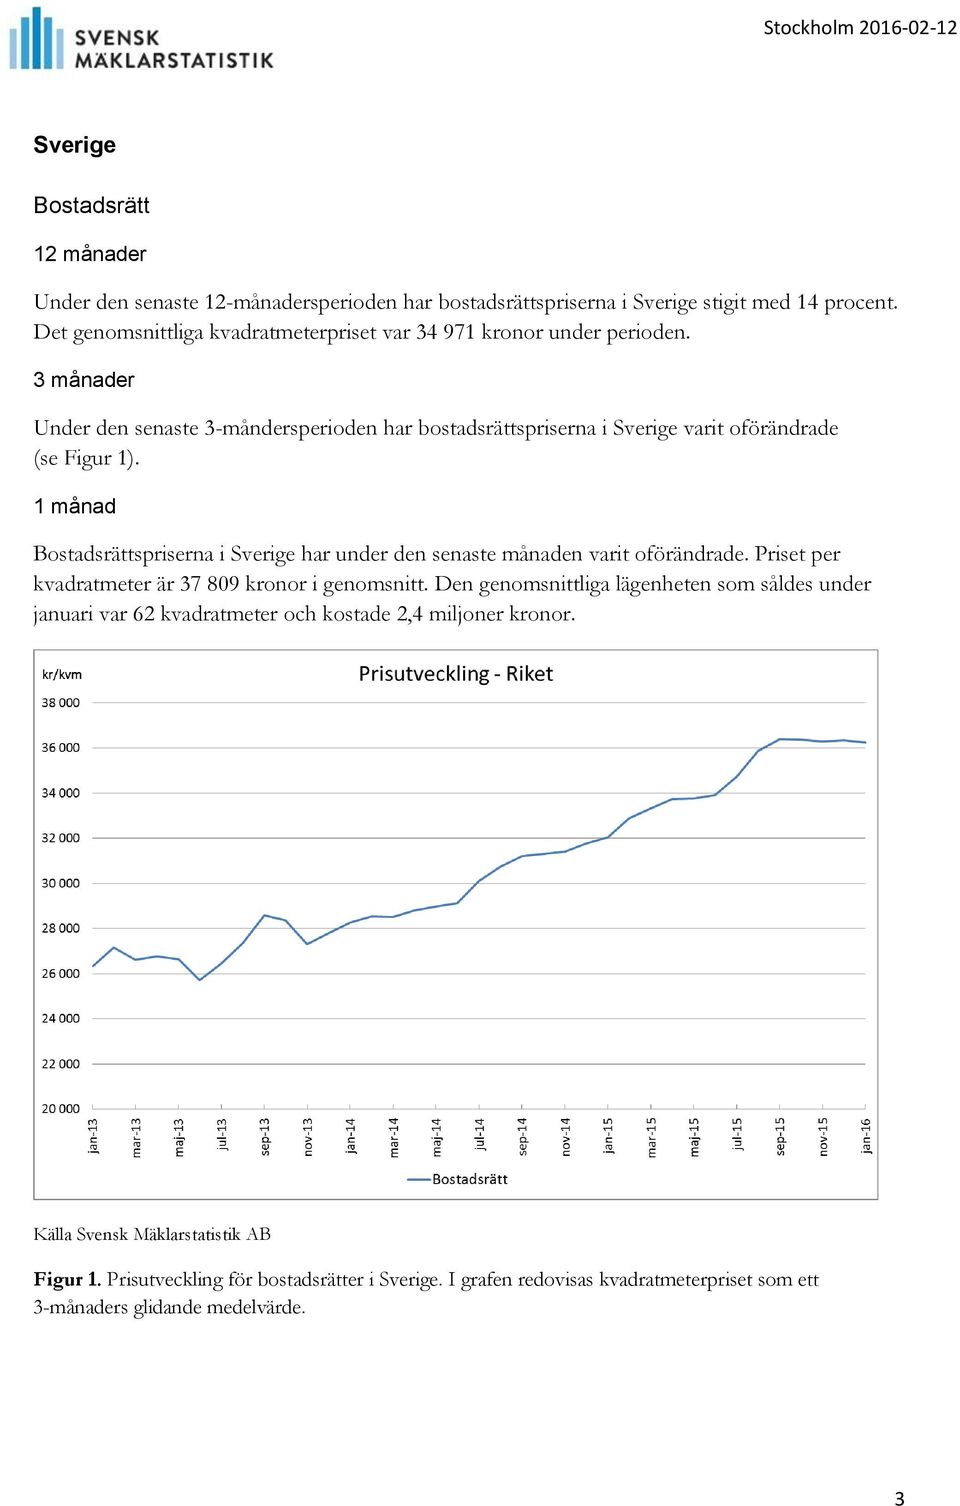 1 månad Bostadsrättspriserna i Sverige har under den senaste månaden varit oförändrade. Priset per kvadratmeter är 37 809 kronor i genomsnitt.